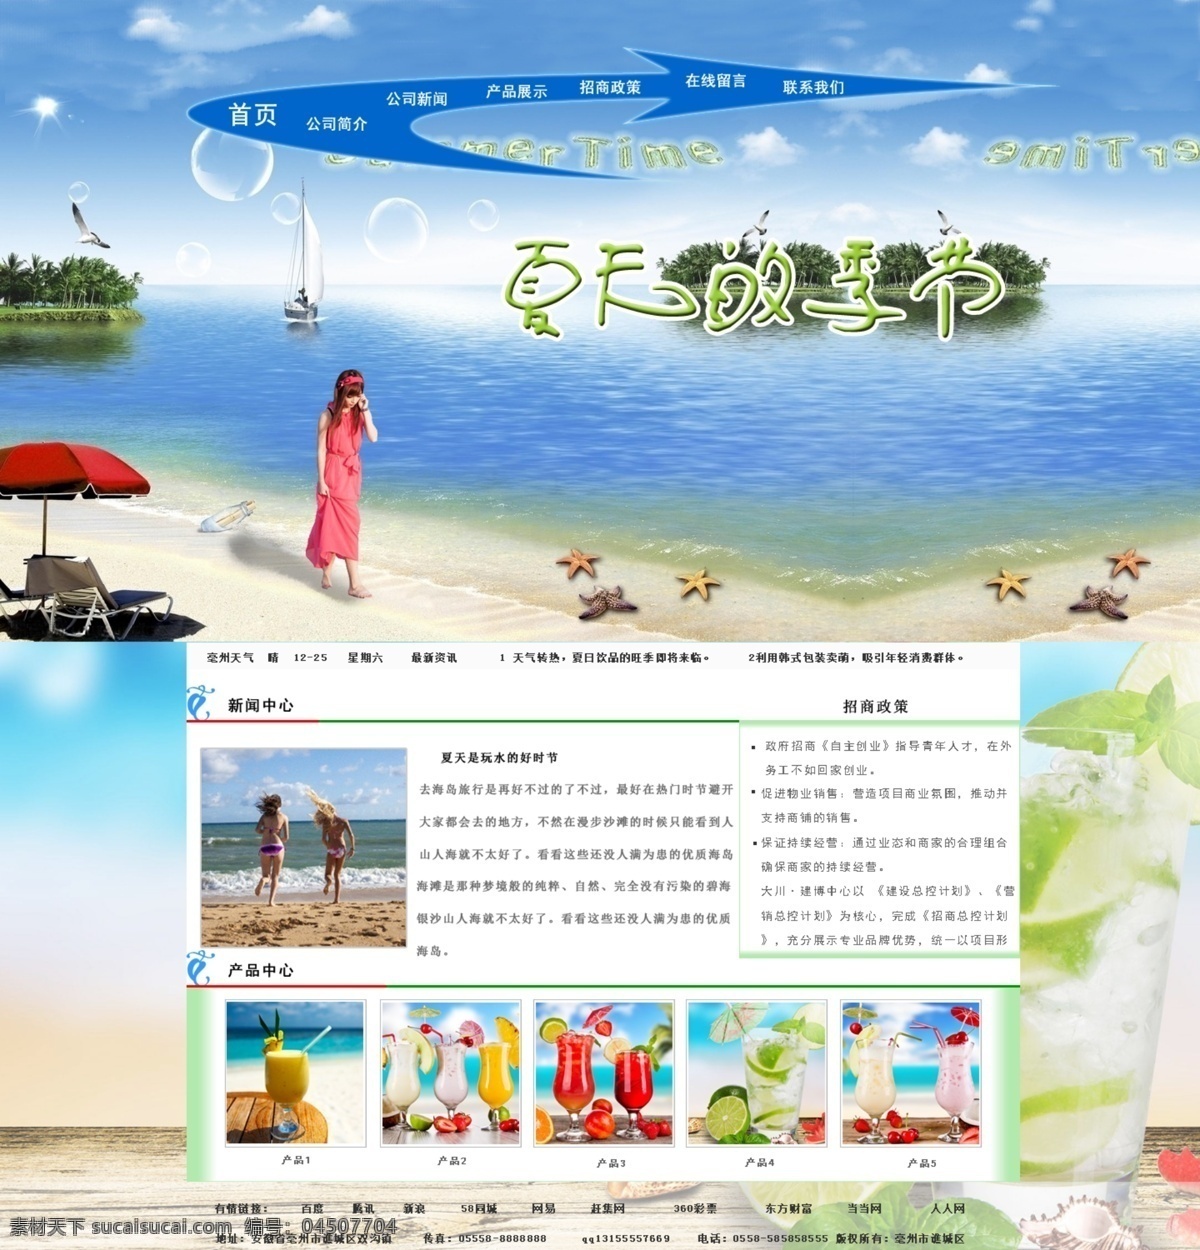 夏天 海滩 饮料 背景图 网站模板 夏天的季节 夏天的海滩 夏日饮料 原创设计 原创网页设计